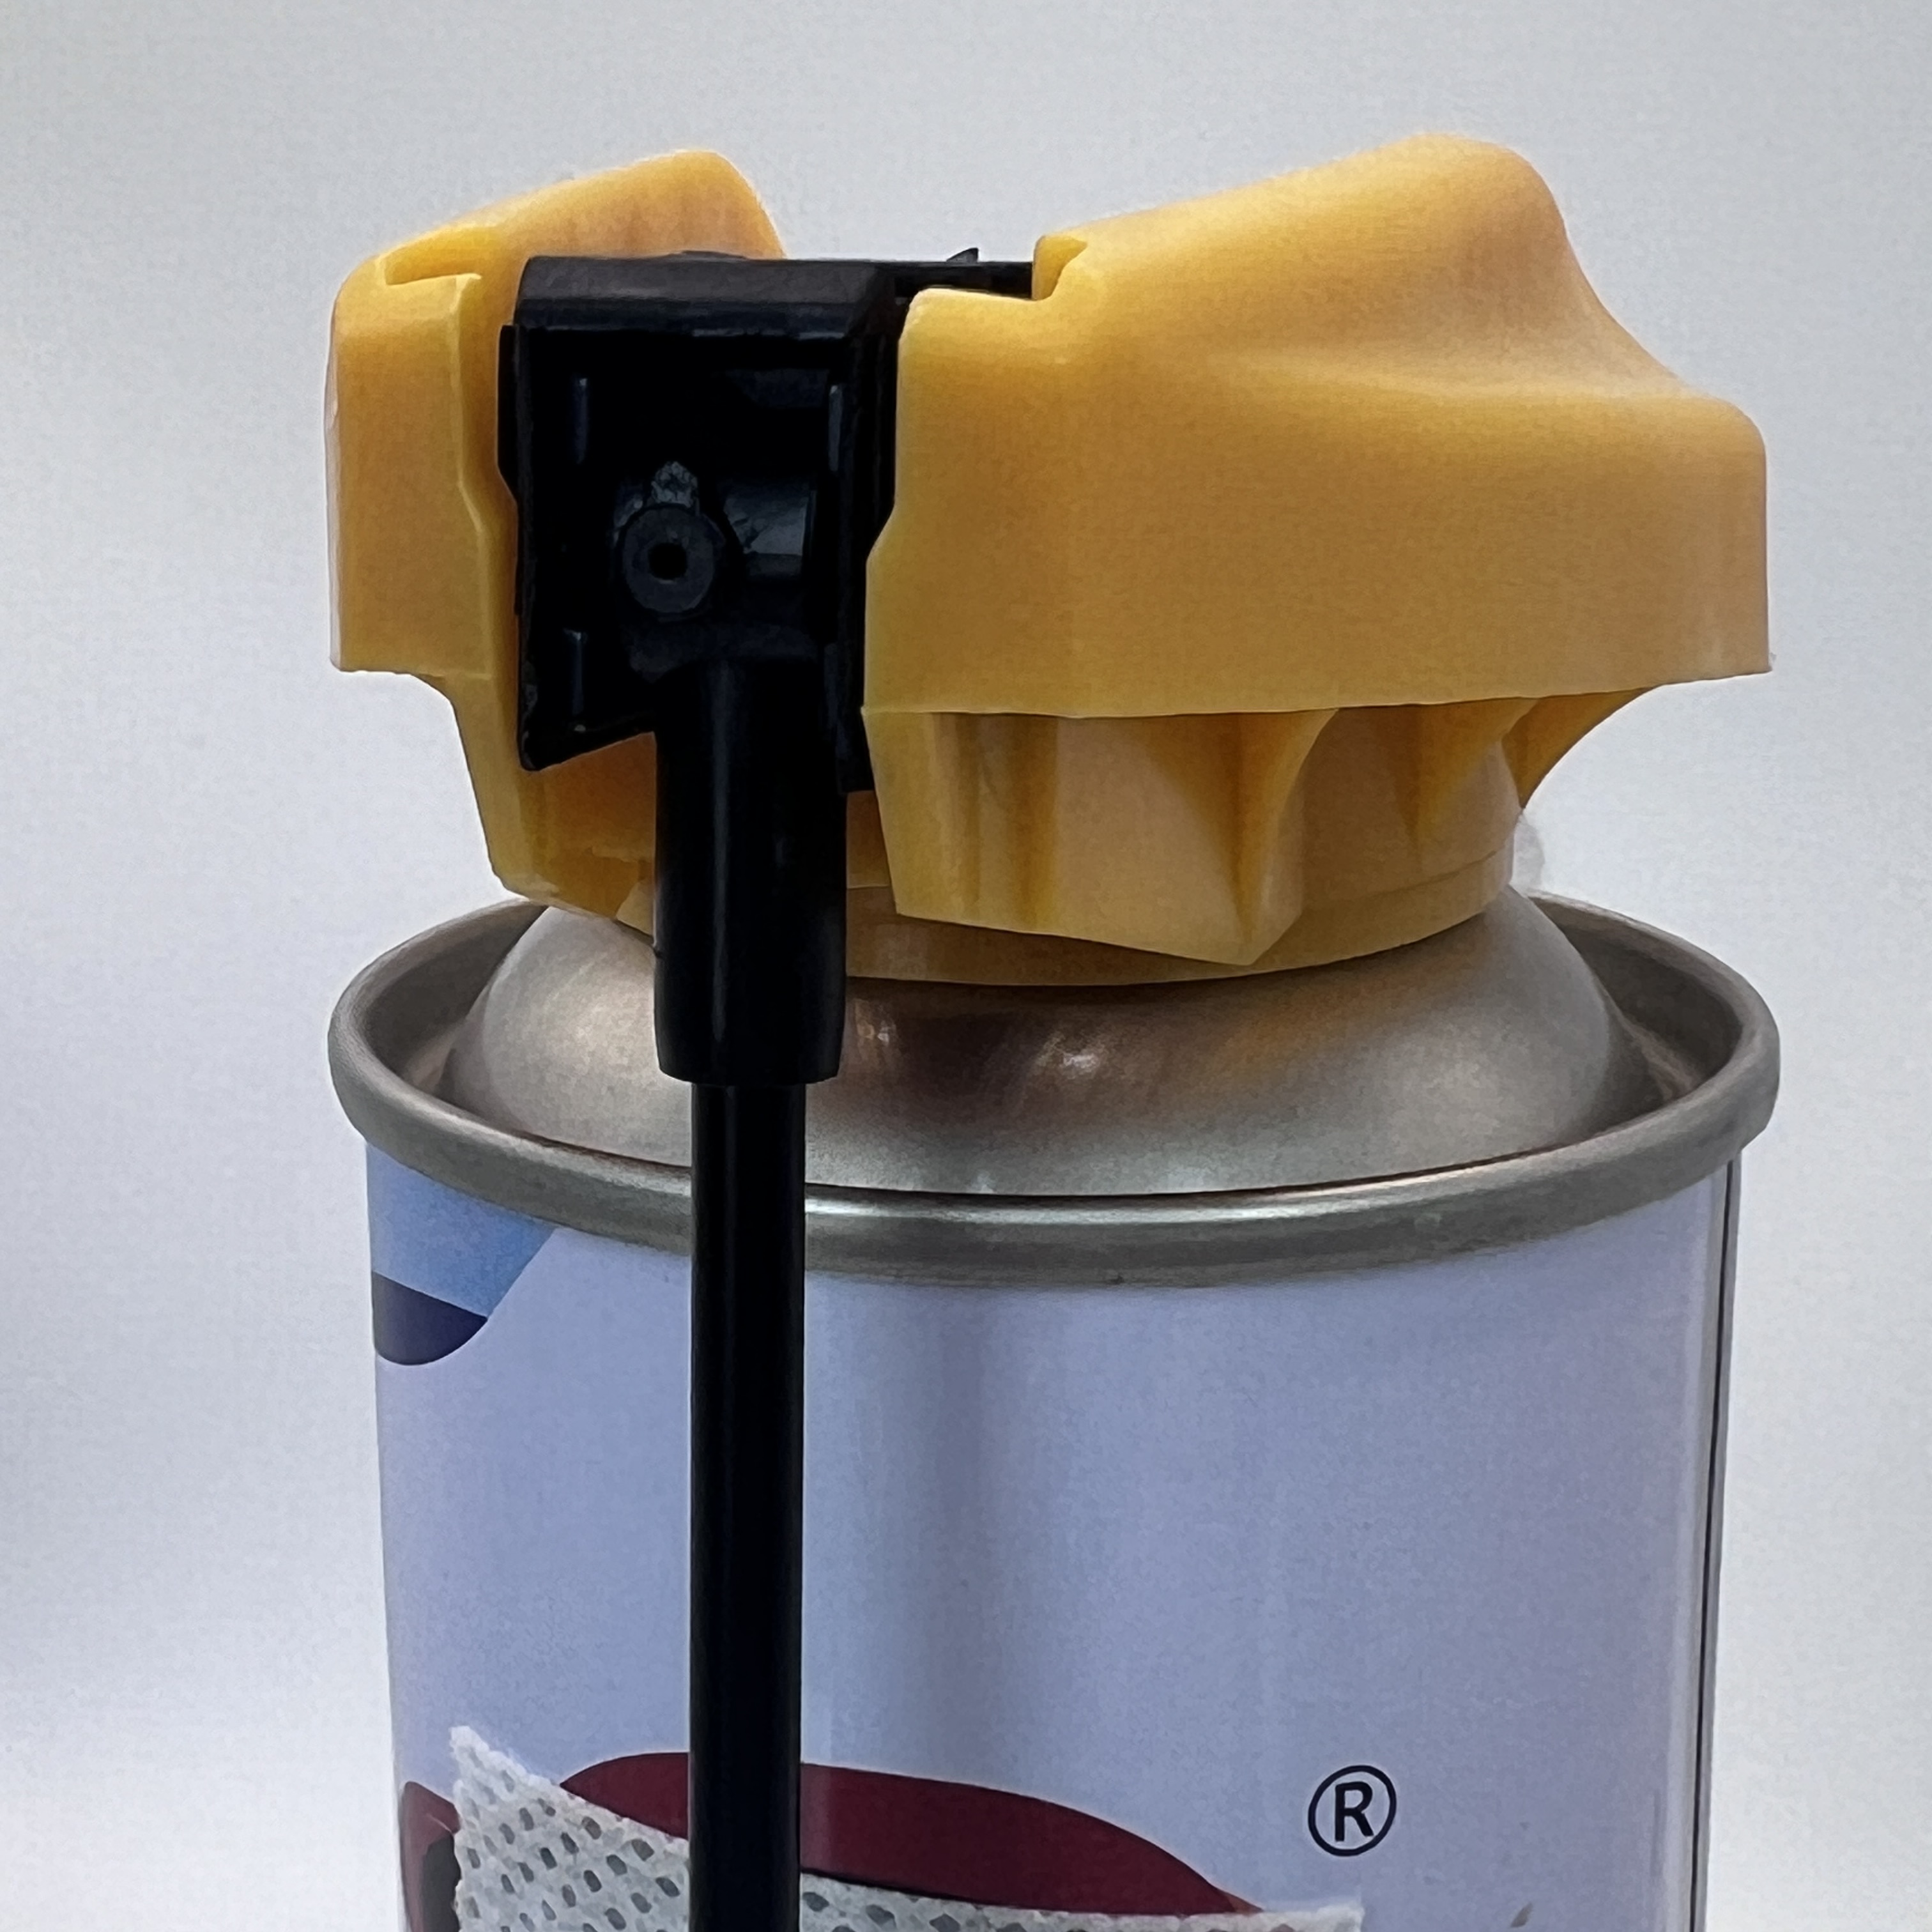 Regulowany zawór aerozolu w sprayu wentylatora - wszechstronne rozwiązanie do zastosowań gospodarstw domowych